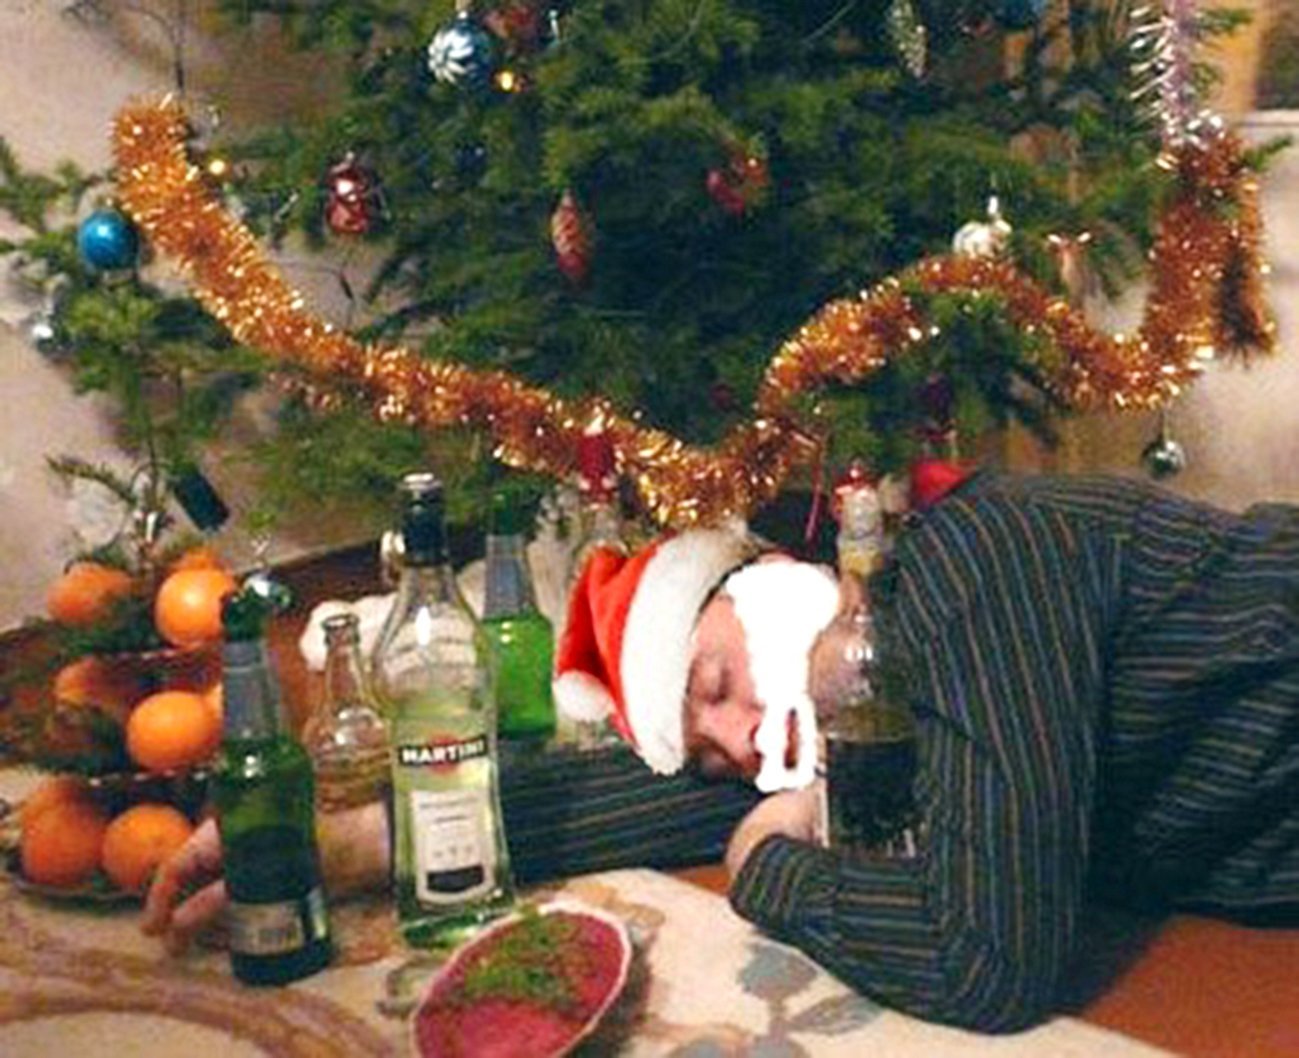 Друзья сильно напились. Новогодняя пьянка. Алкаш под елкой.